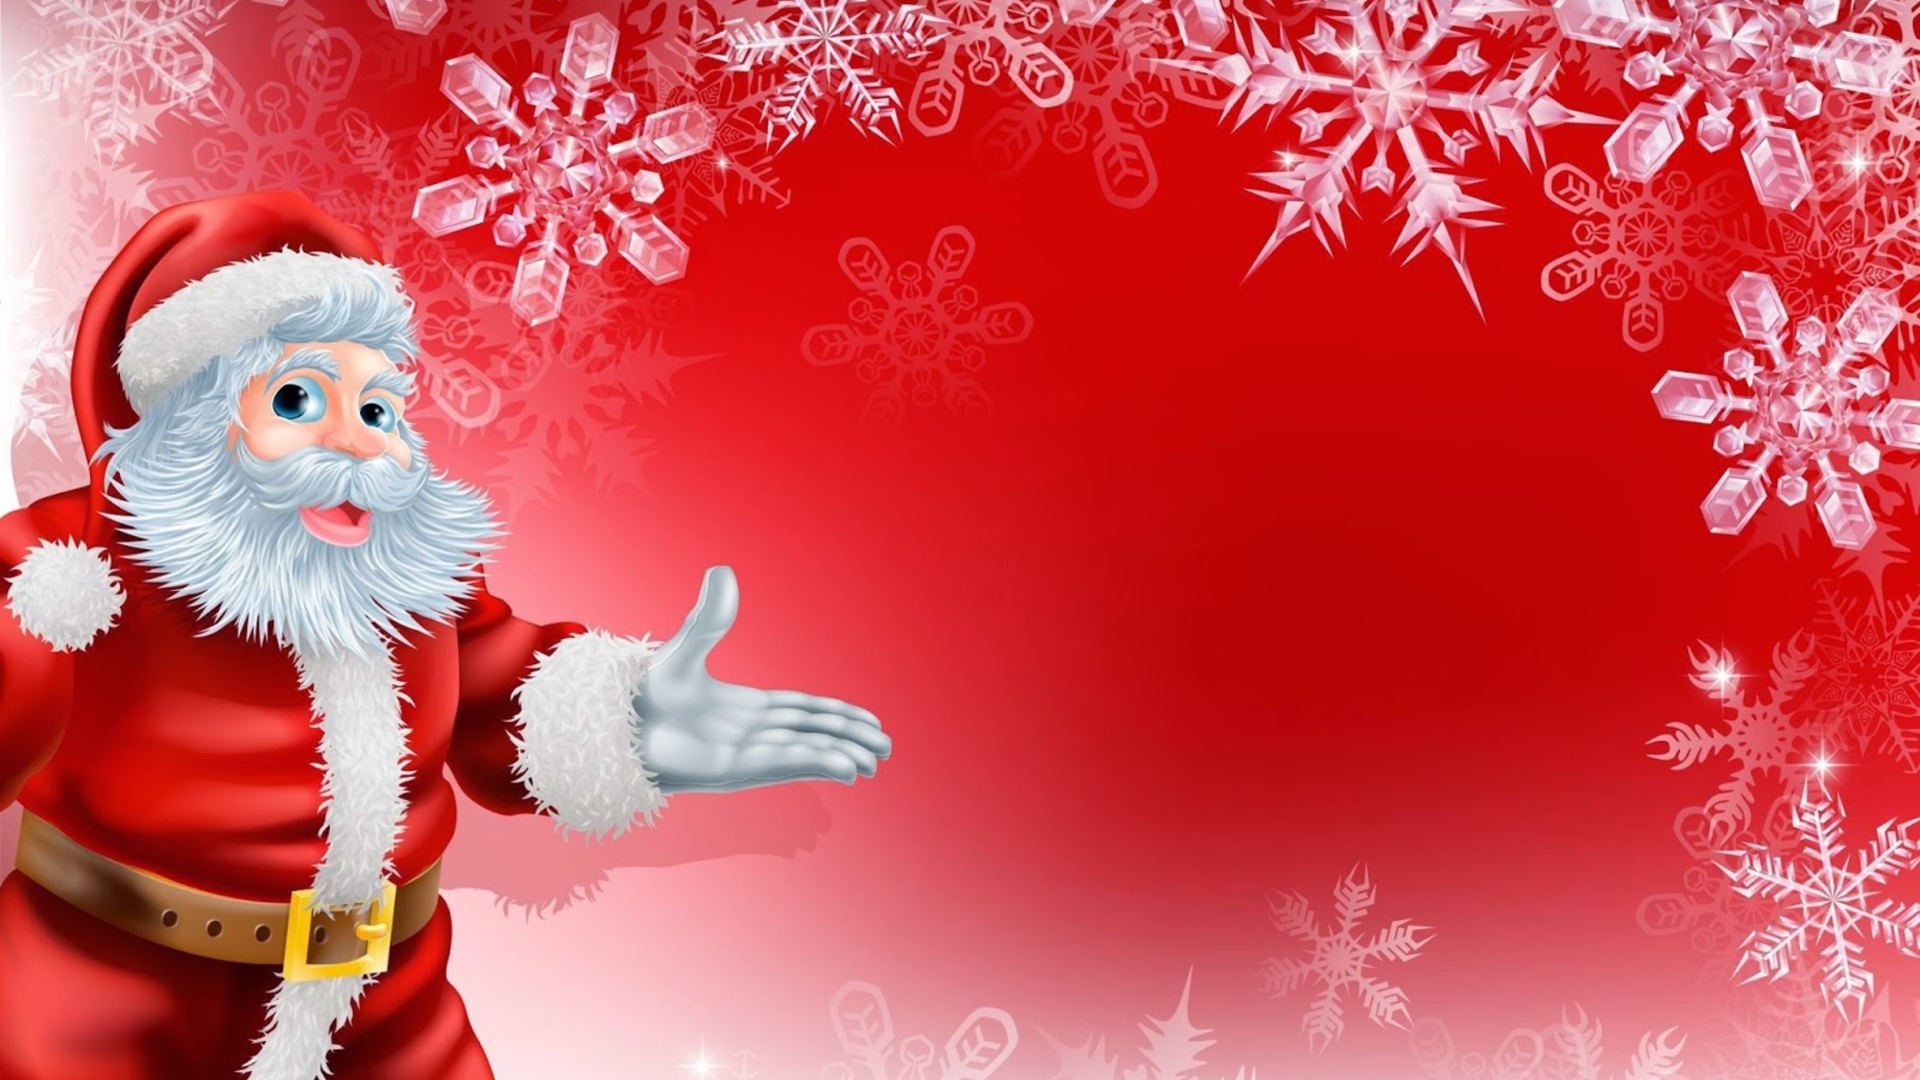 Санта Клаус на красном фоне с белыми снежинками, фон для новогодней открытки